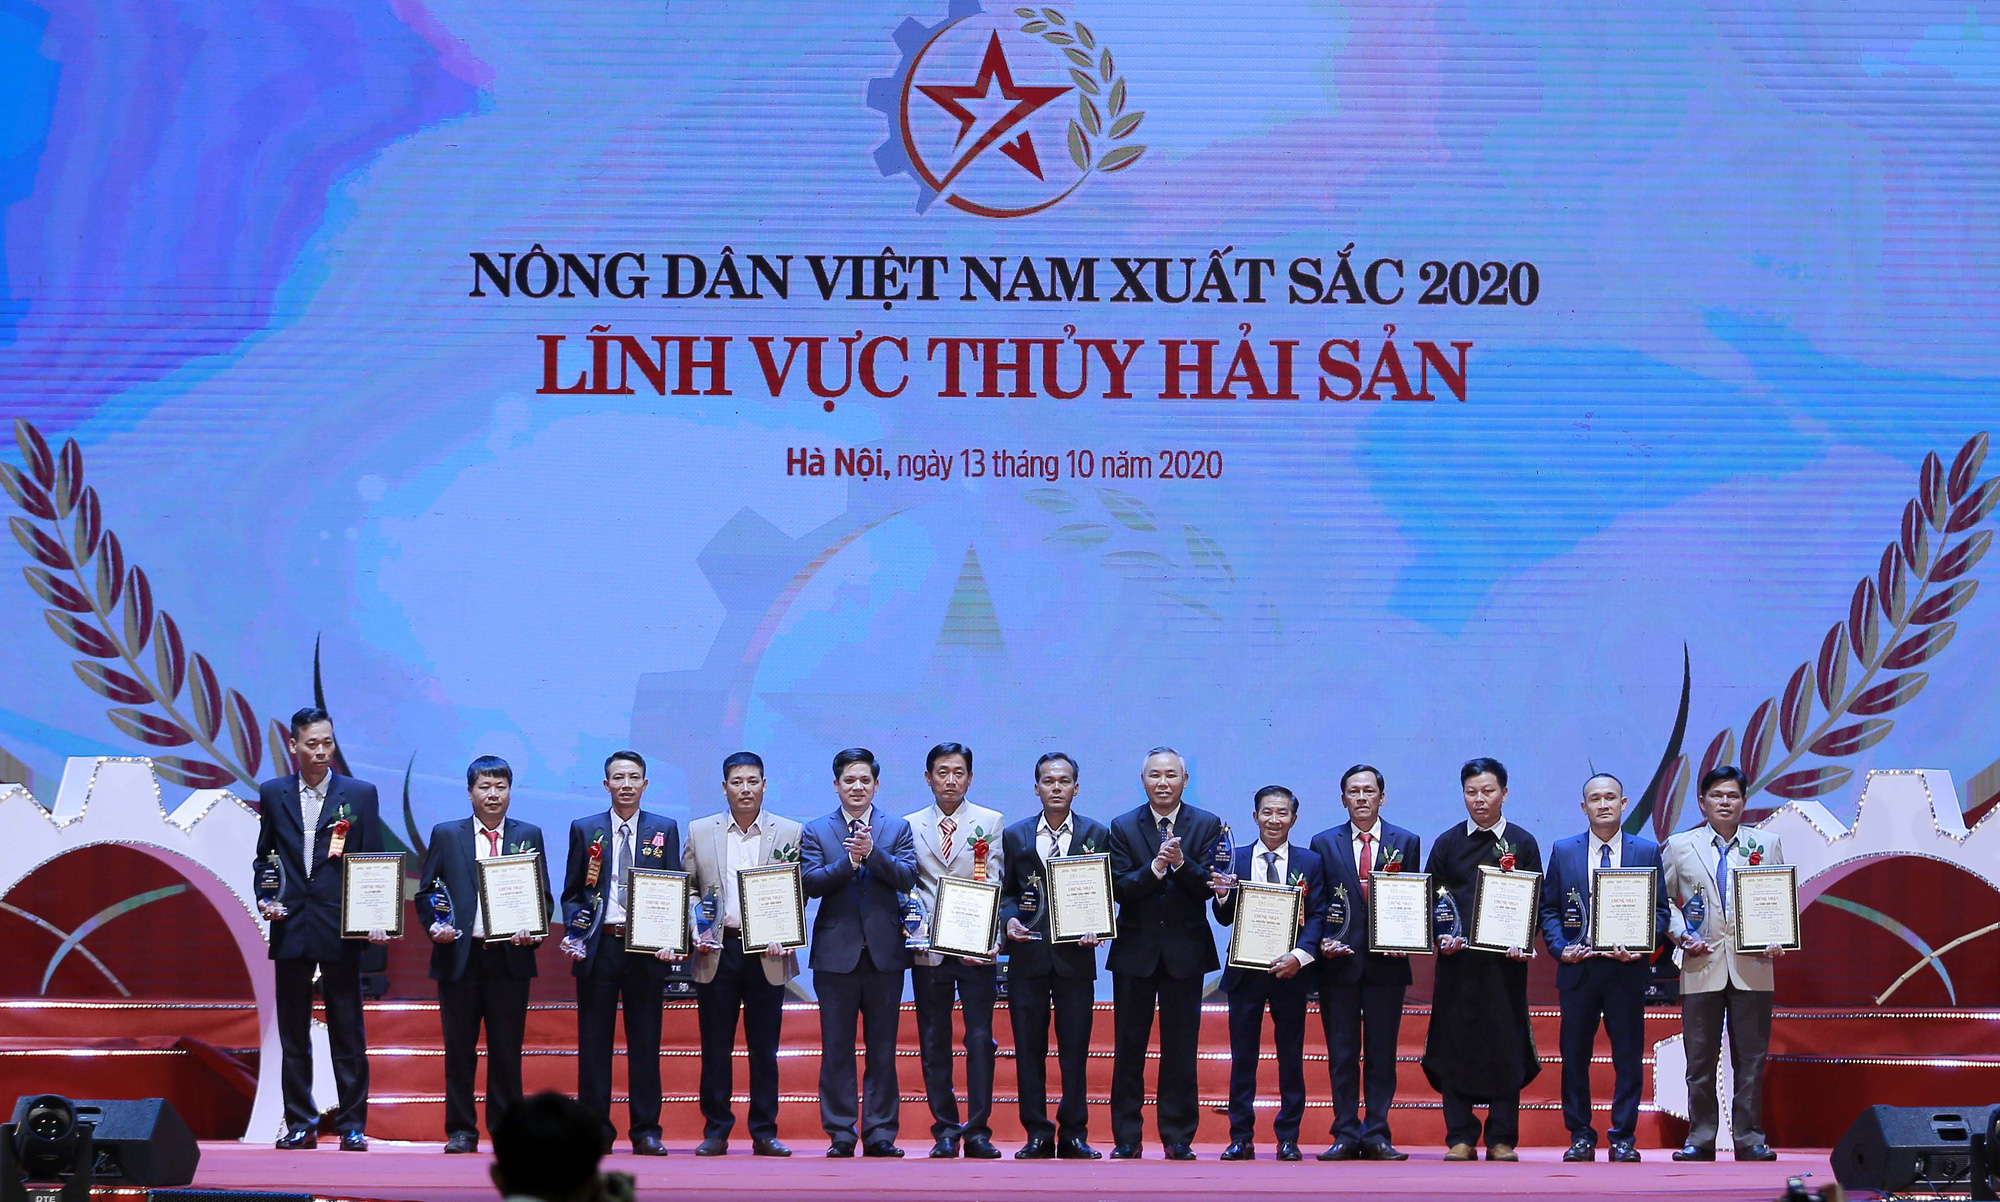 Ảnh: Toàn cảnh Lễ tôn vinh và trao danh hiệu 63 Nông dân Việt Nam xuất sắc 2020 - Ảnh 11.